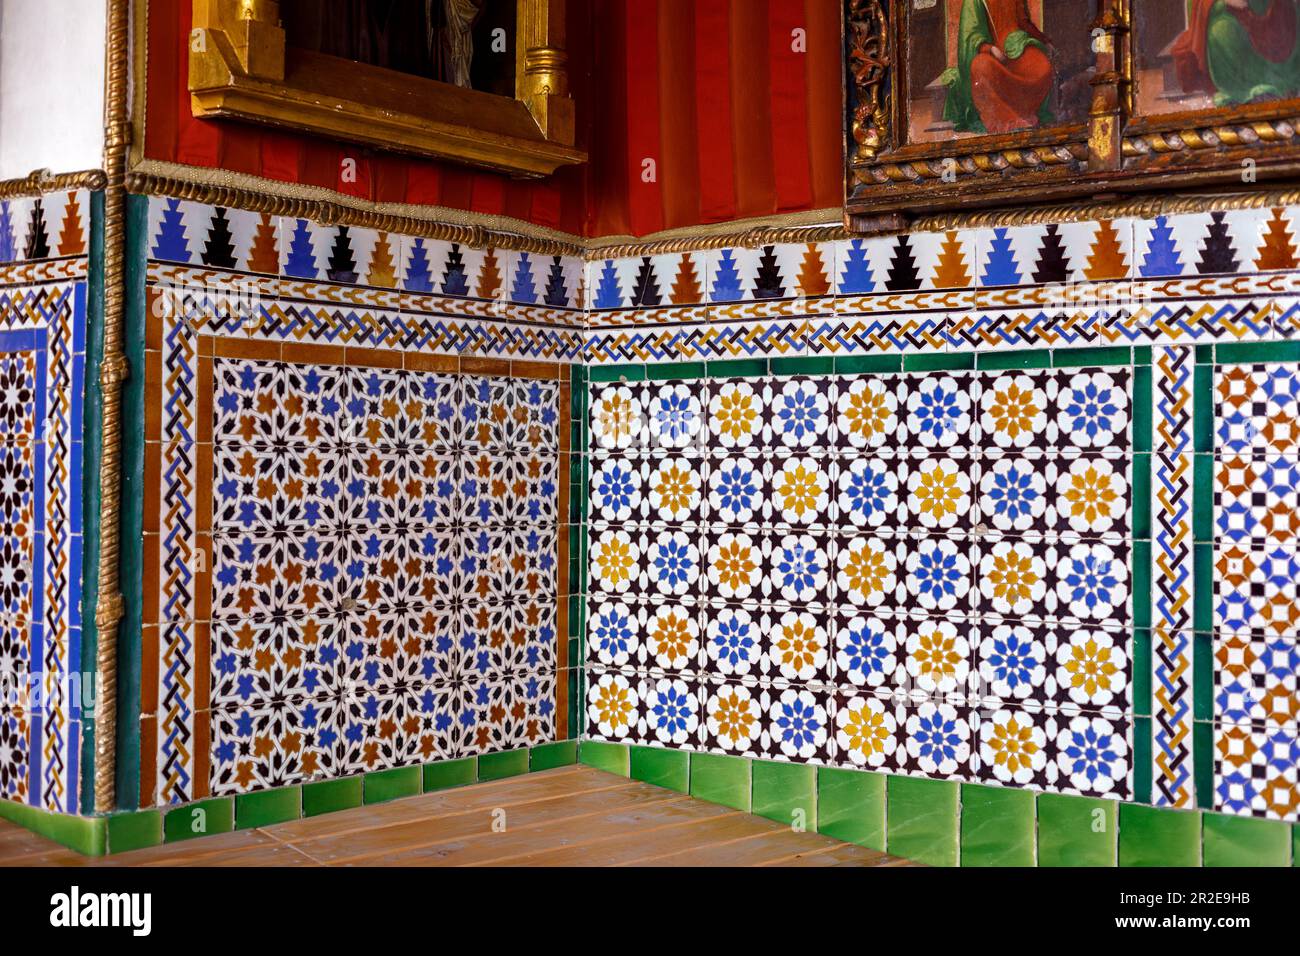 Spain, Andalucia, Segovia, Alcazar of Segovia, zellij tile work Stock Photo